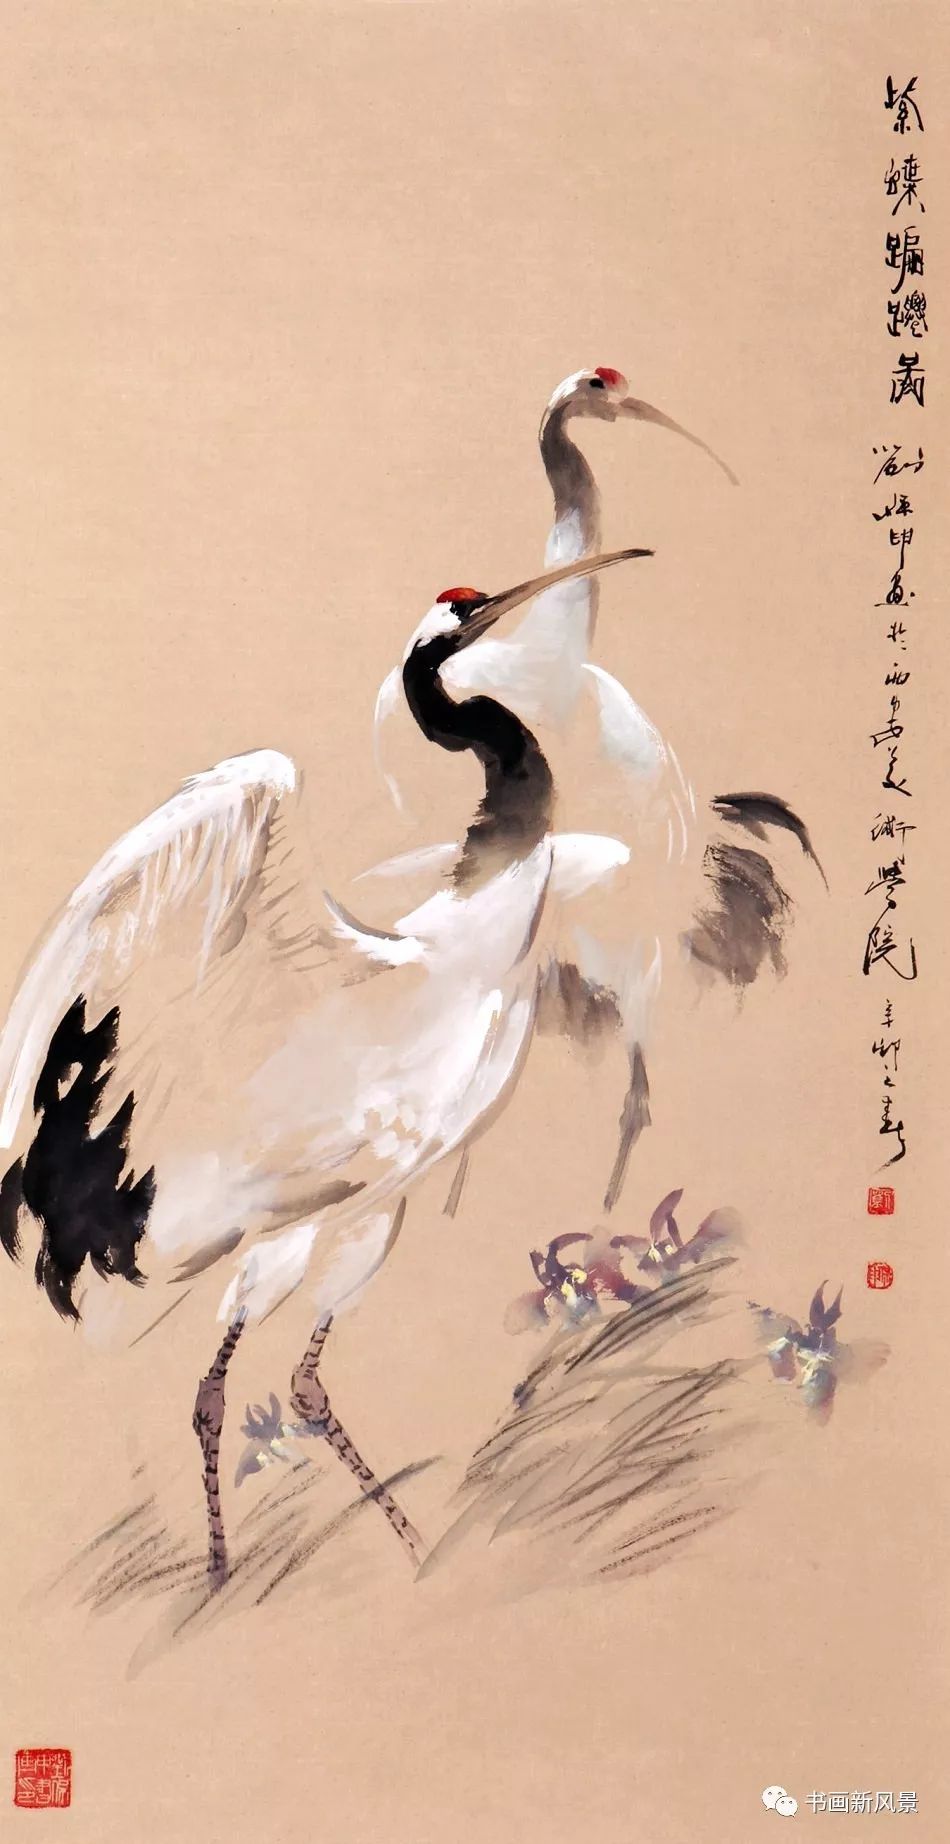 画的其它作品:这些画的作者是西安美院教授,图书馆馆长刘保申(1937